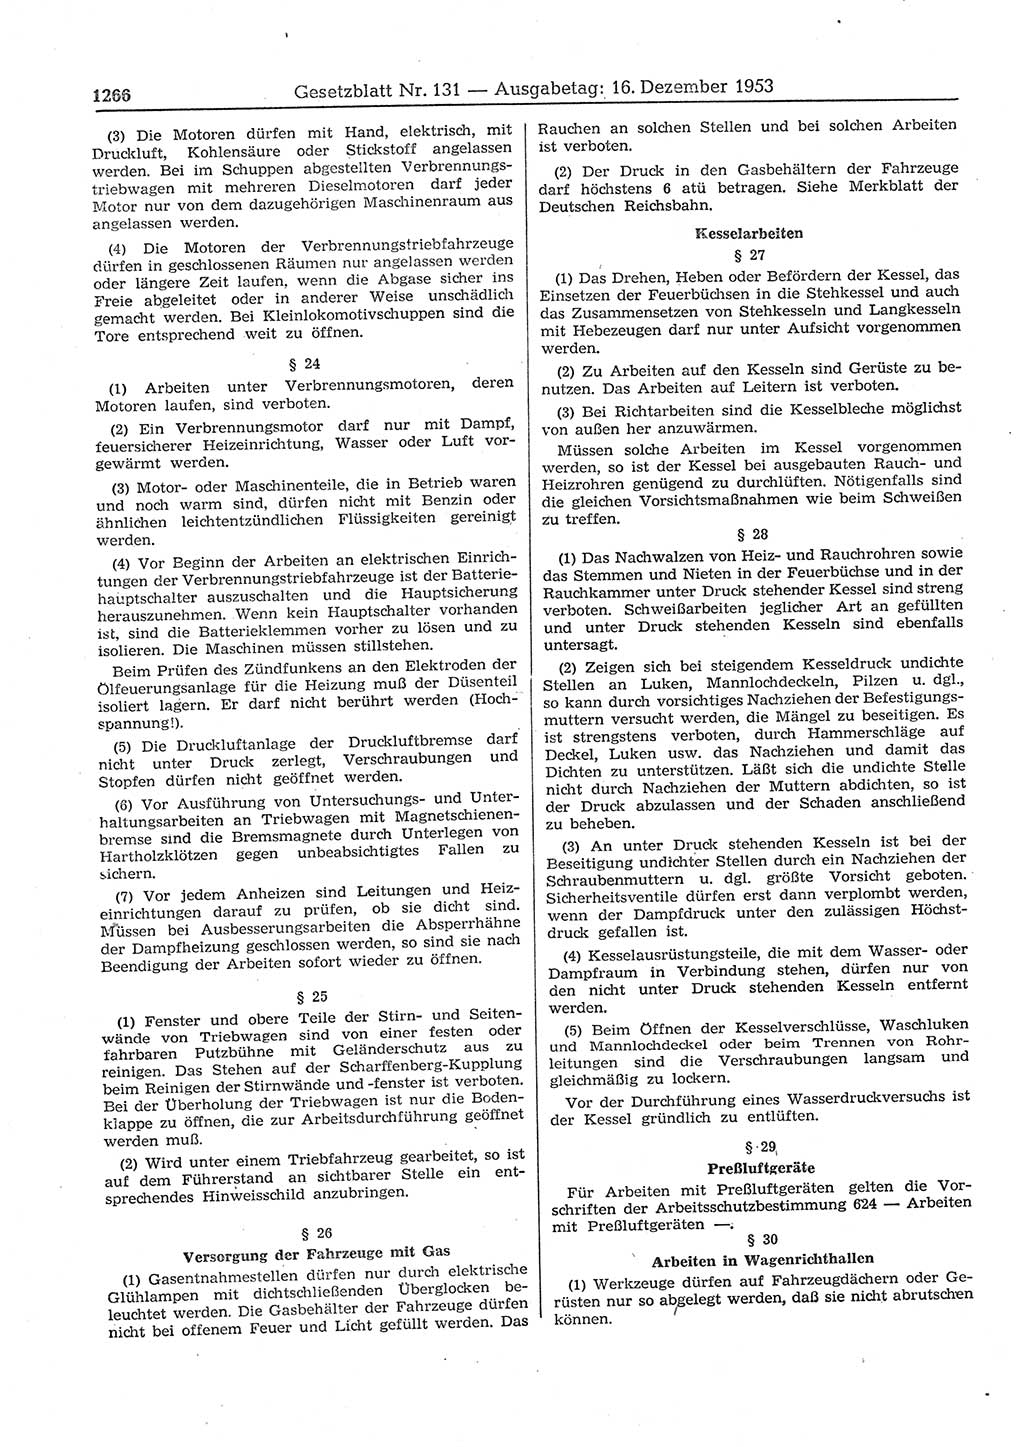 Gesetzblatt (GBl.) der Deutschen Demokratischen Republik (DDR) 1953, Seite 1266 (GBl. DDR 1953, S. 1266)